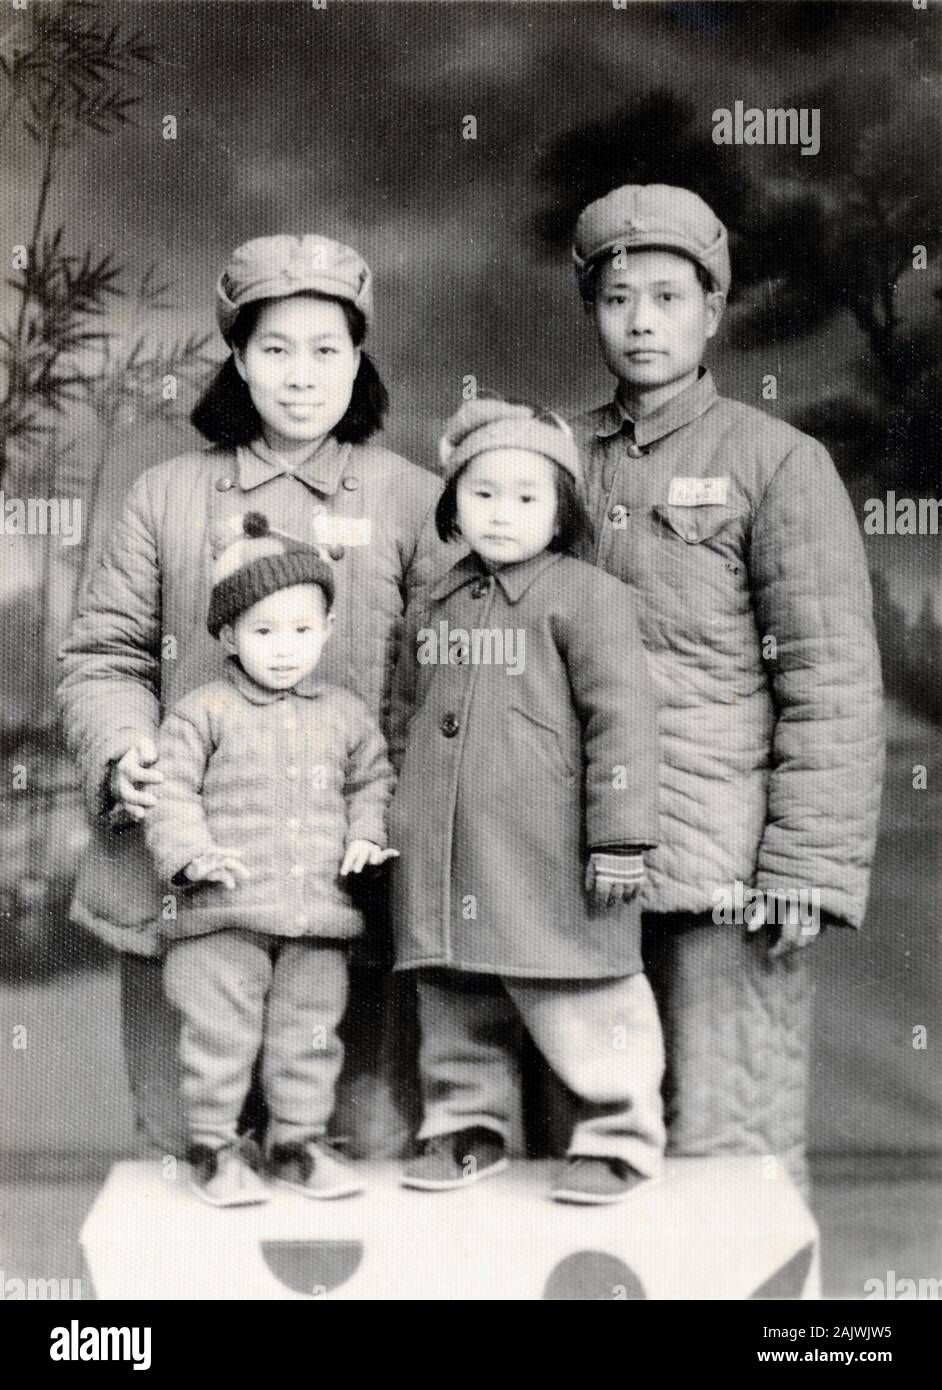 Ideal oder idealistischen chinesischen Familie trägt der Vorsitzende Mao die Chinesische Anzüge, Chinesischen Tunika Anzüge oder Zhongshan passt. Paar und zwei Kindern vor der Einführung von Chinas Unterbringung. 1951 kurz nach der Kommunistischen Revolution in China 1949 China fotografiert. Stockfoto